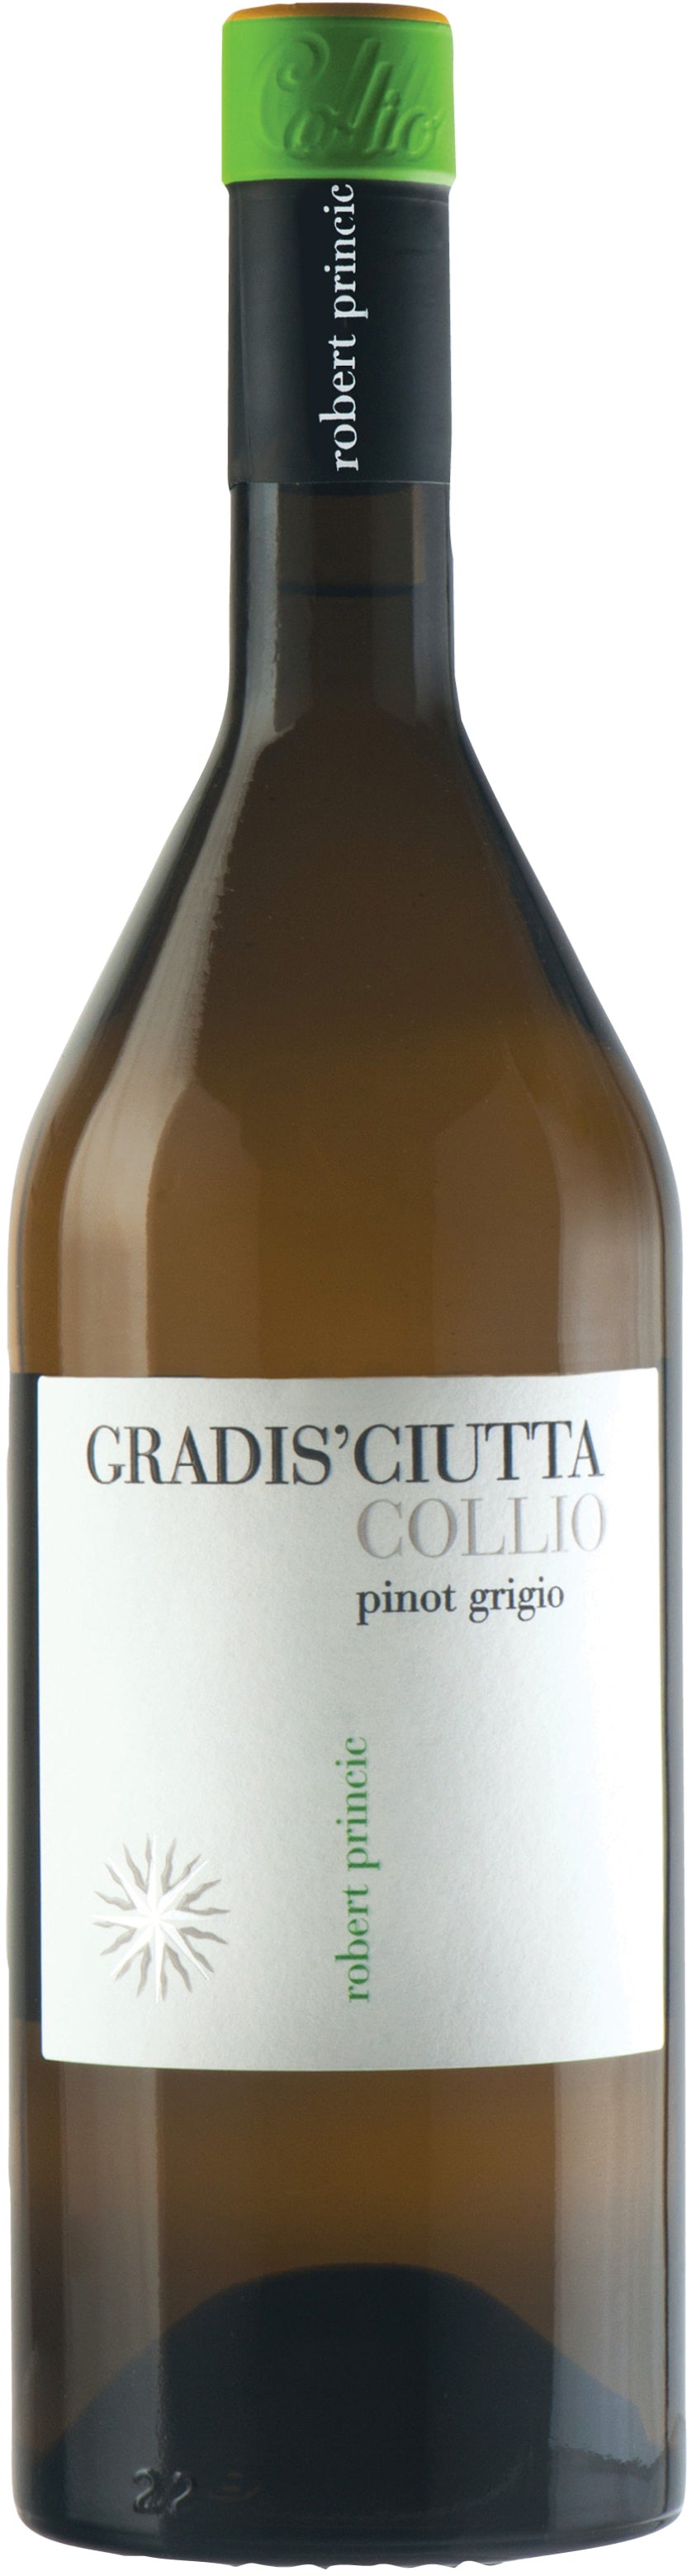 Gradis'Ciutta Pinot Grigio 2020